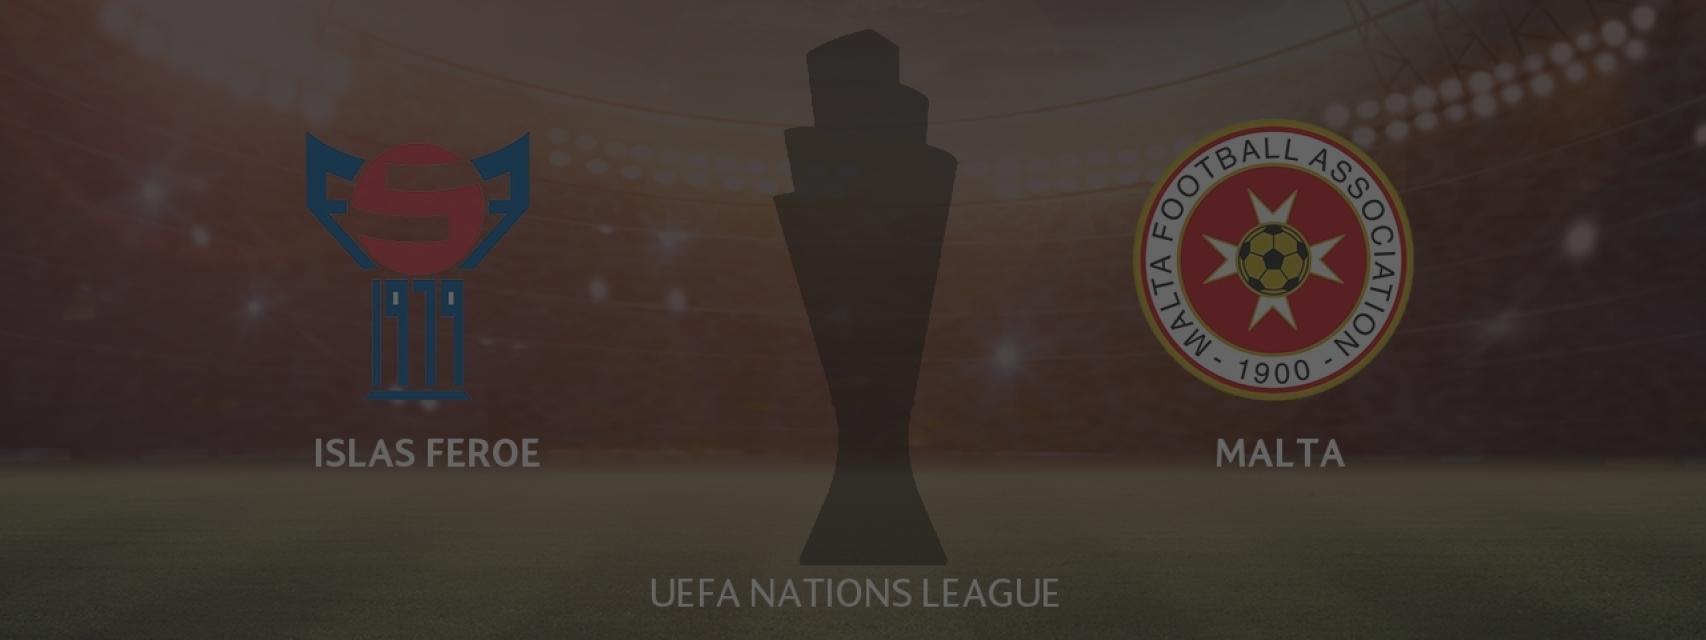 Islas Feroe - Malta, UEFA Nations League